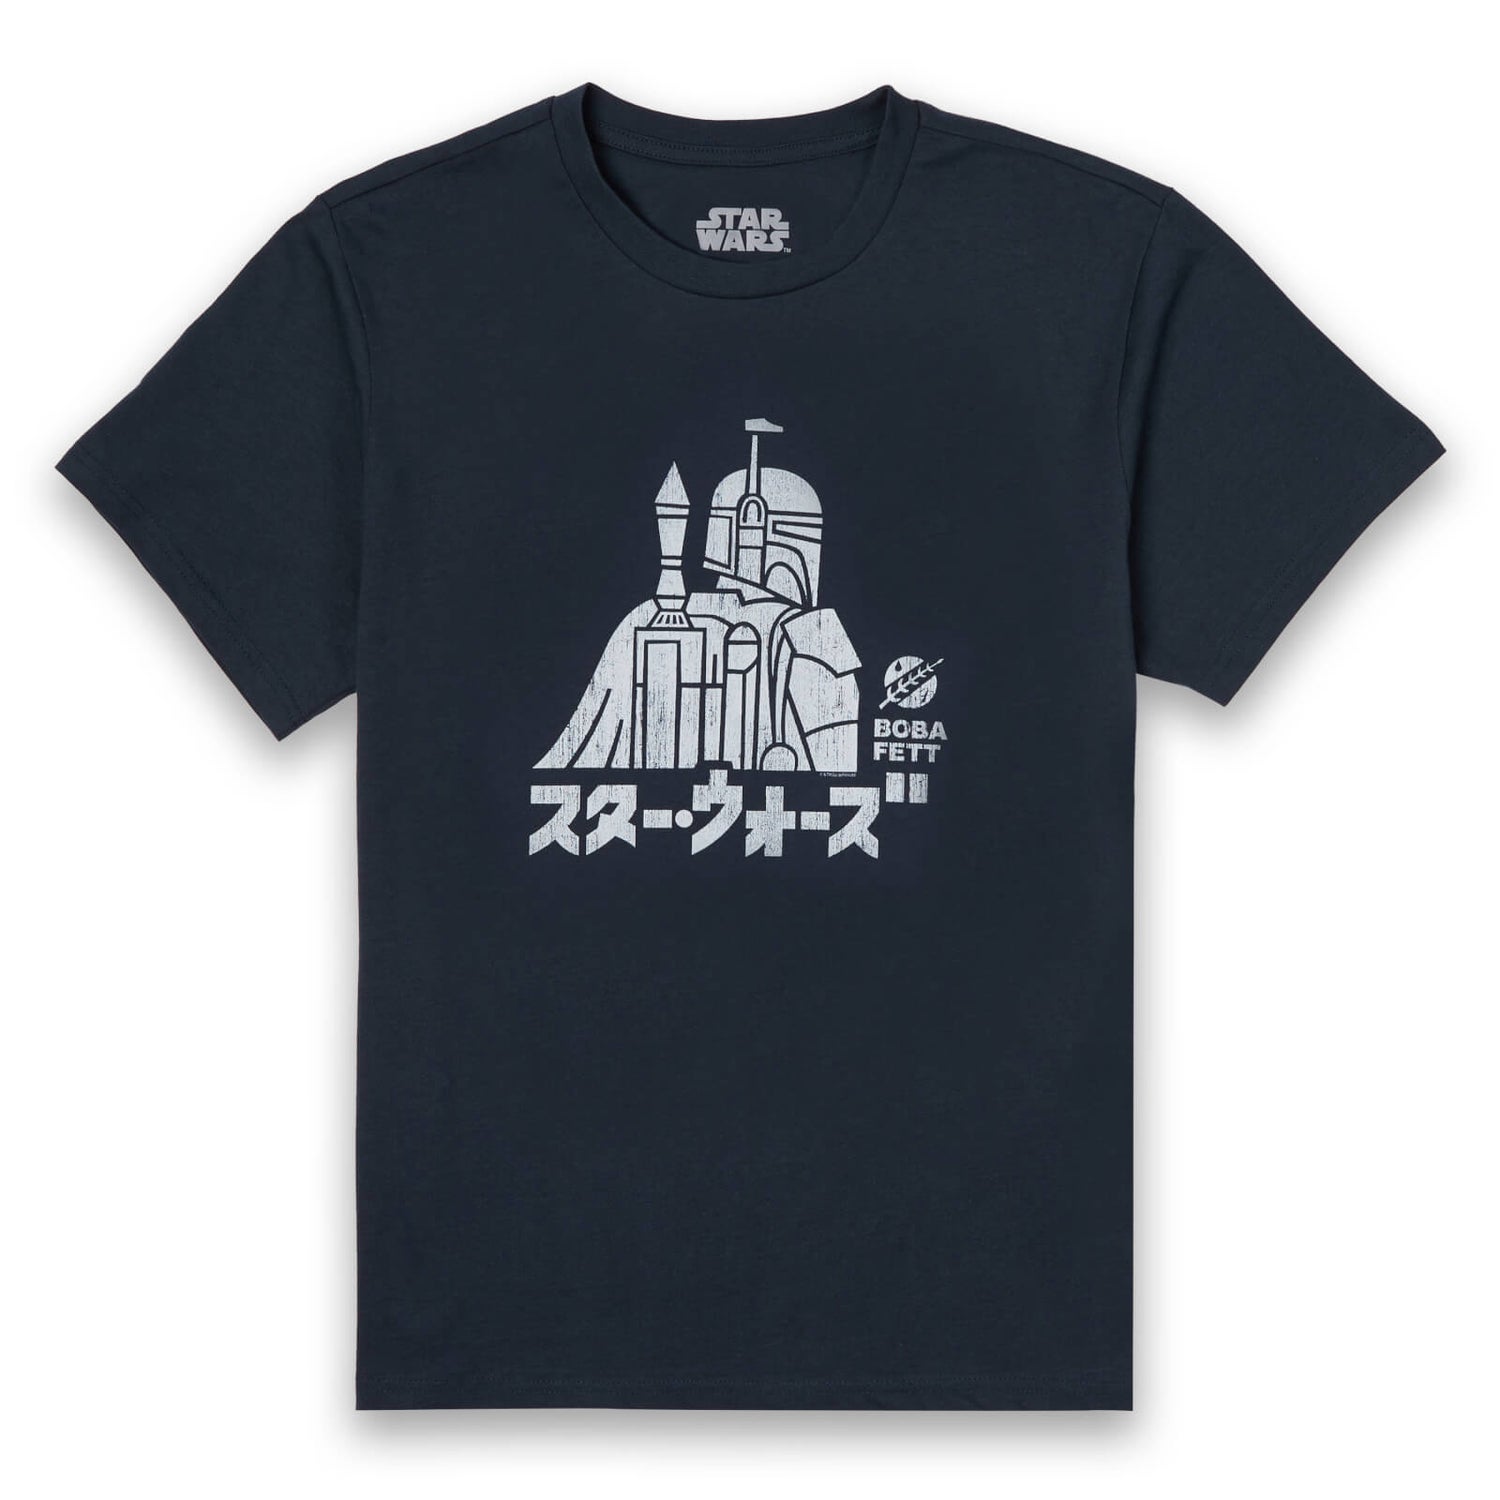 Star Wars Kana Boba Fett Men's T-Shirt - Navy